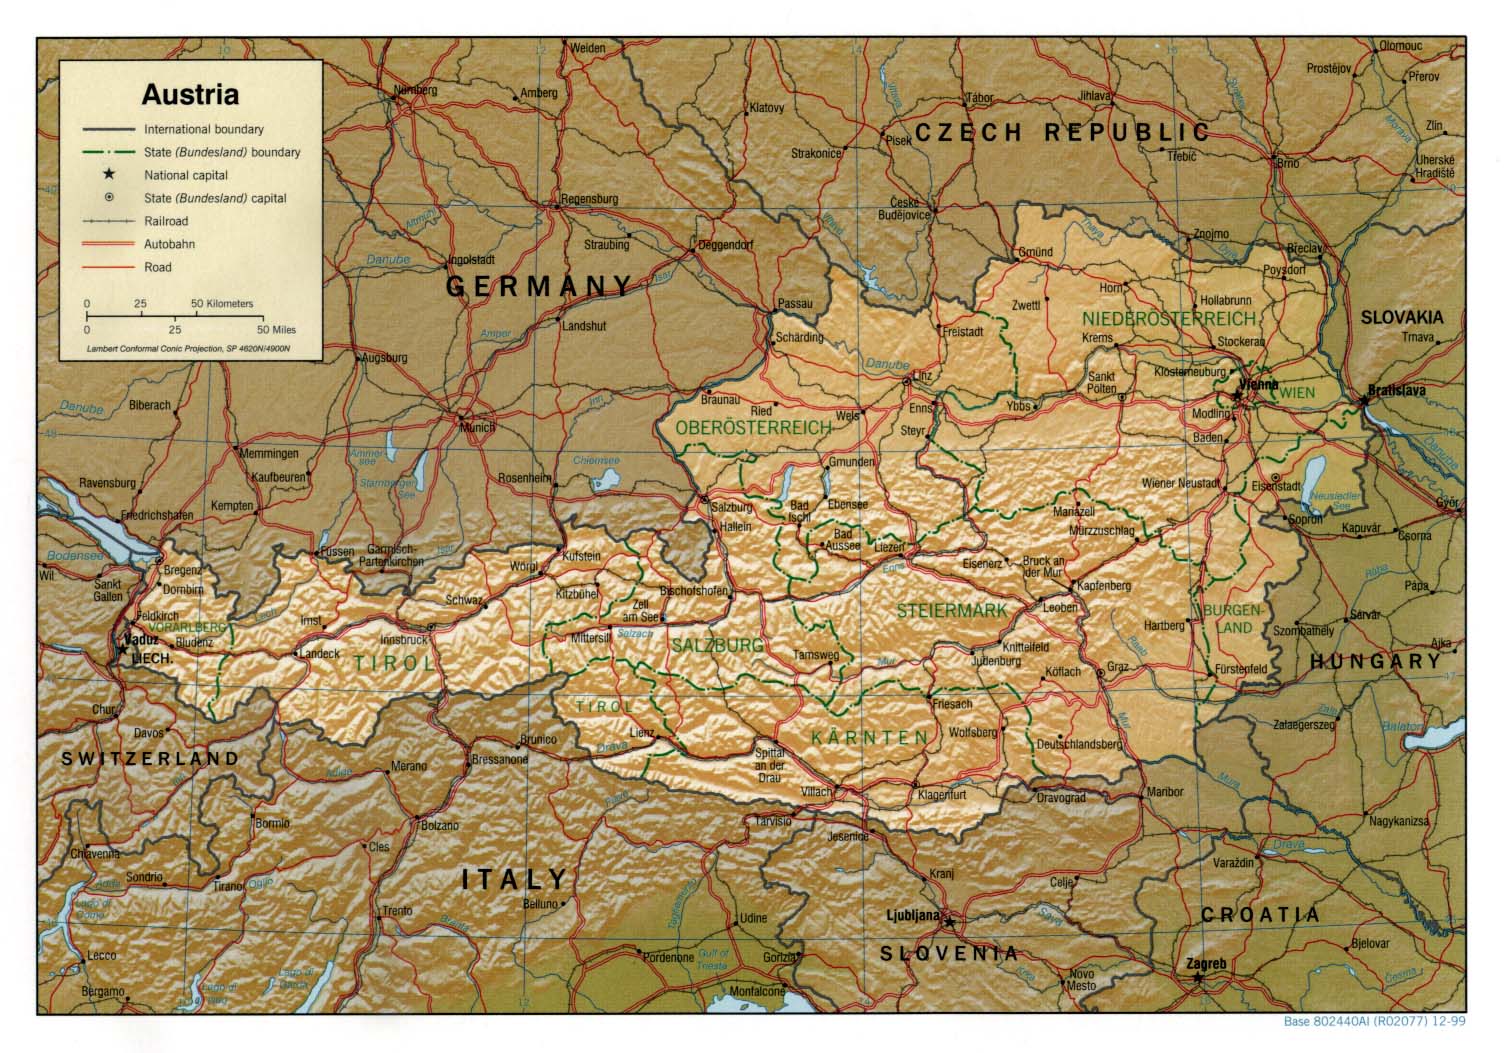 ausztria térkép vorarlberg Ausztria térkép lap   Megbízható válaszok profiktól ausztria térkép vorarlberg